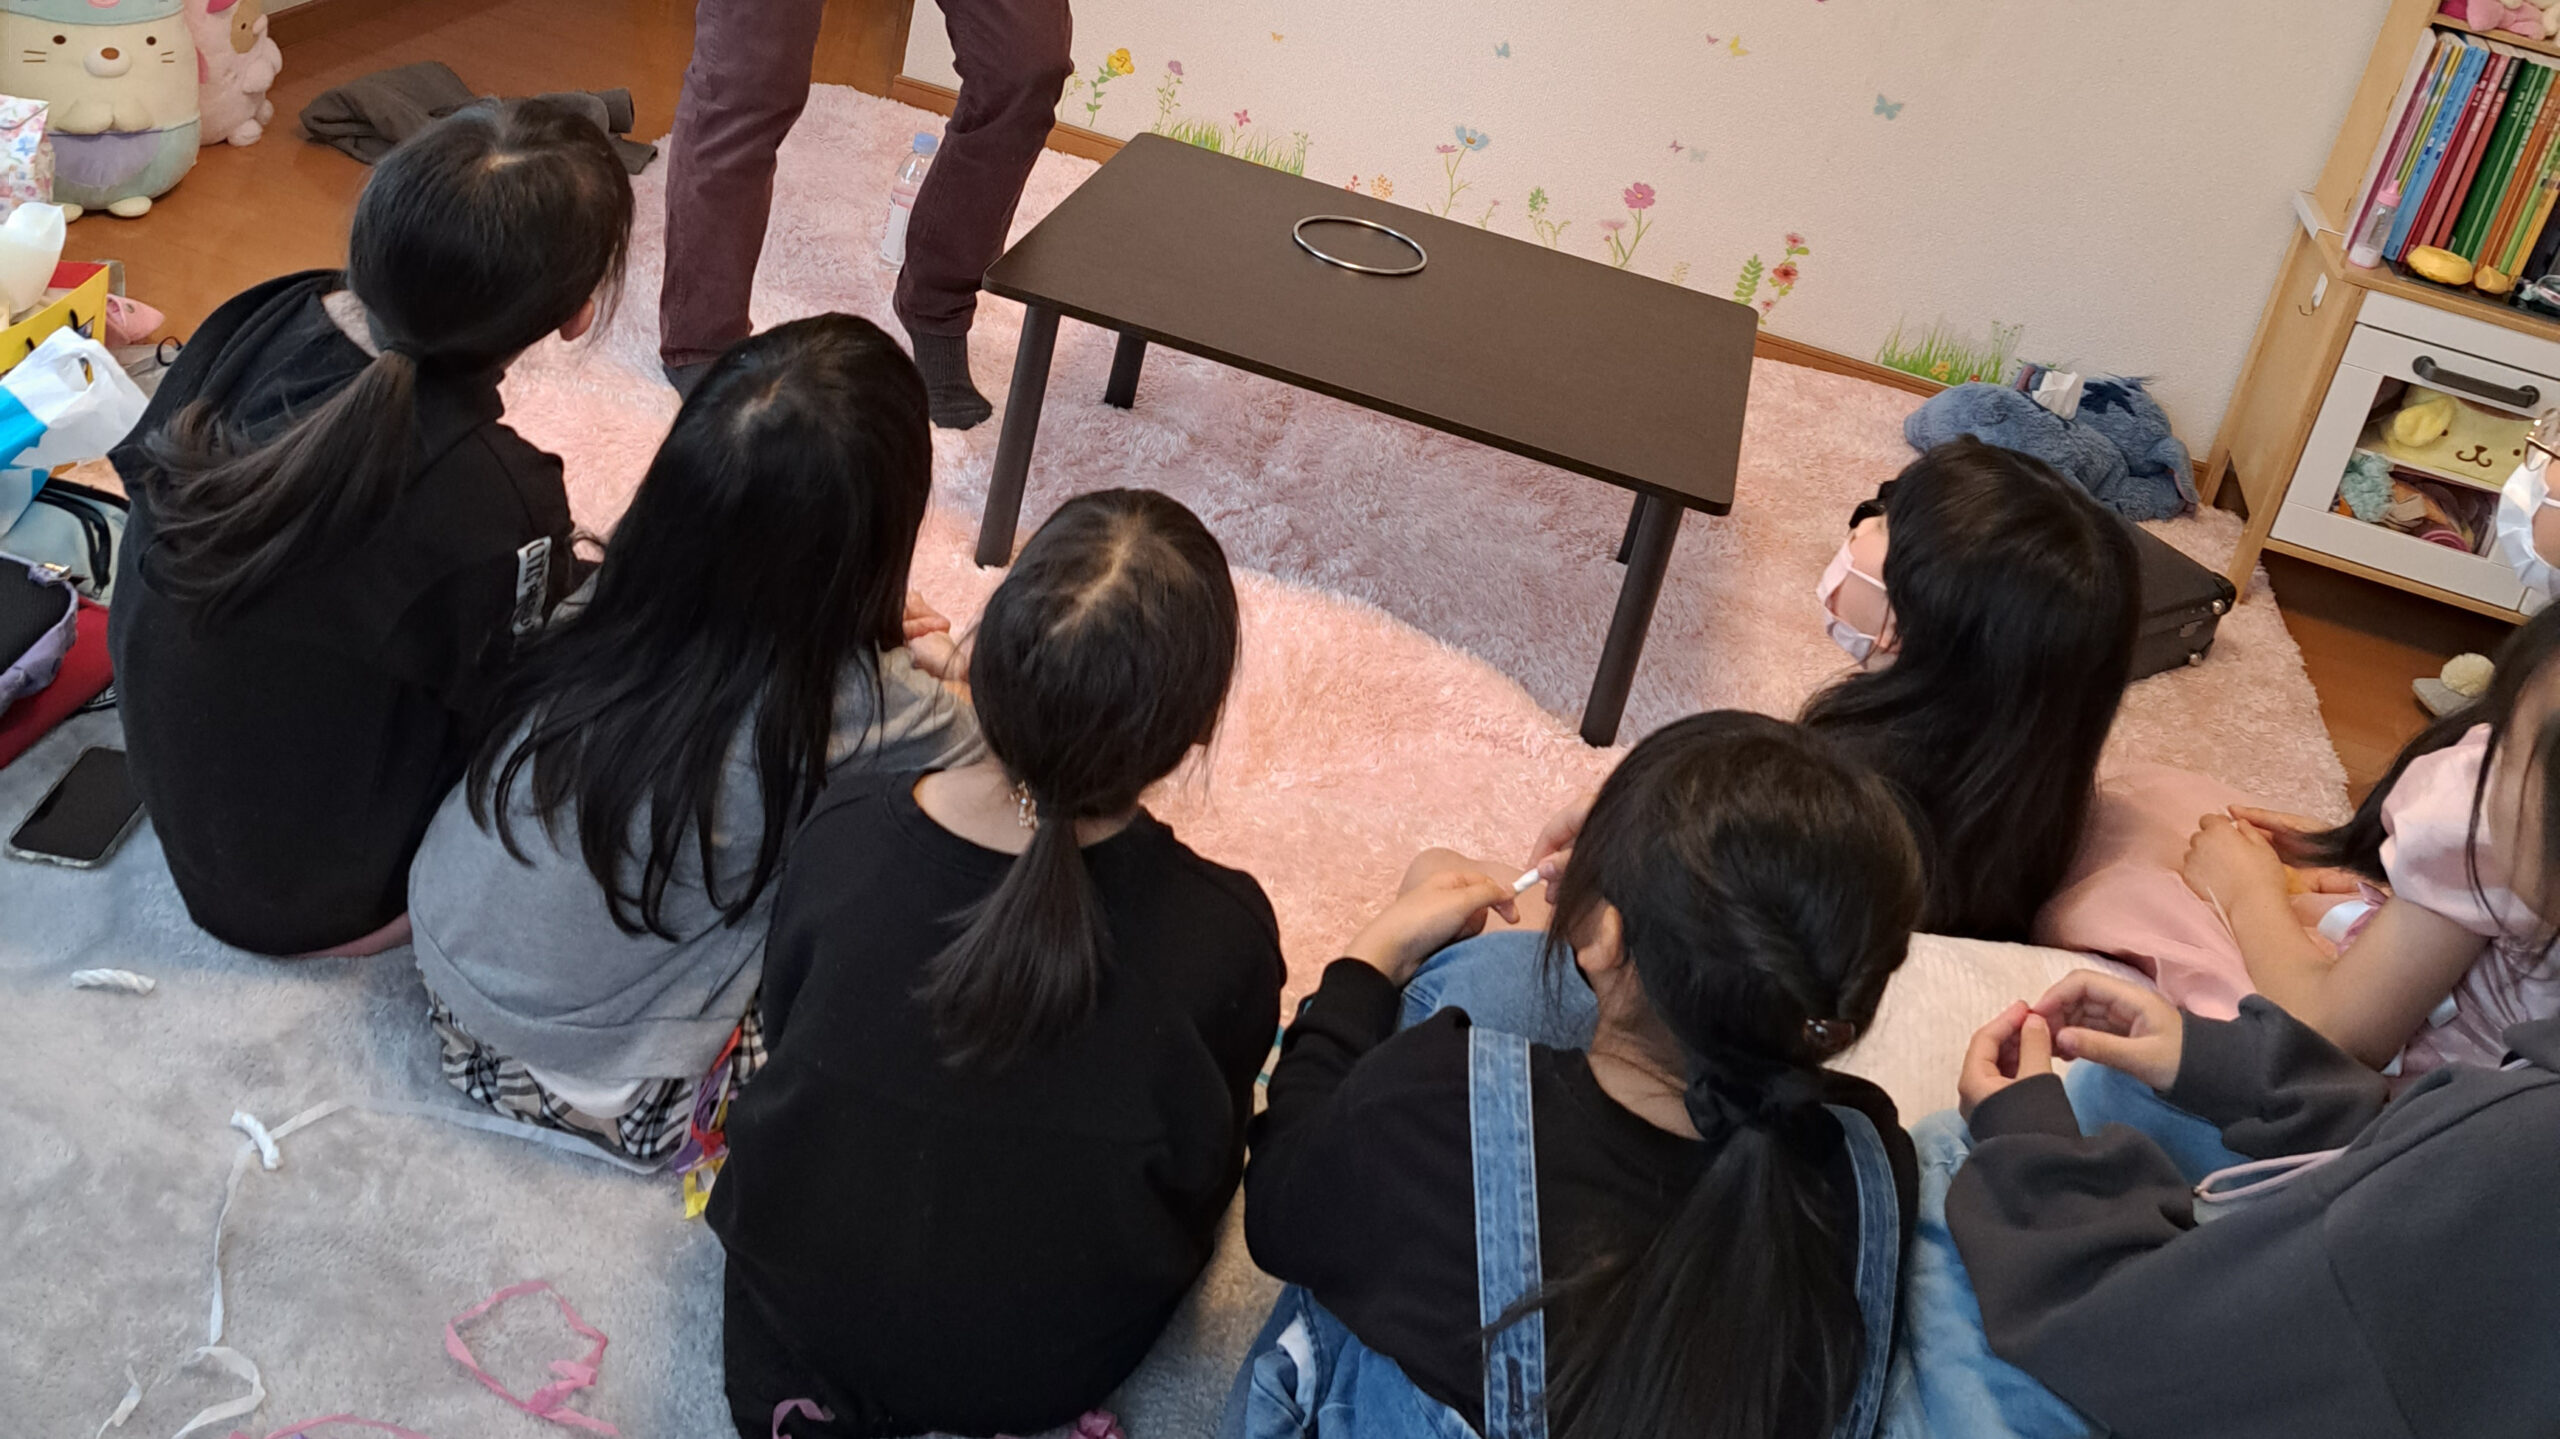 マジックショーをみる子供達 10歳娘誕生会でマジックショー 横浜市, 神奈川県